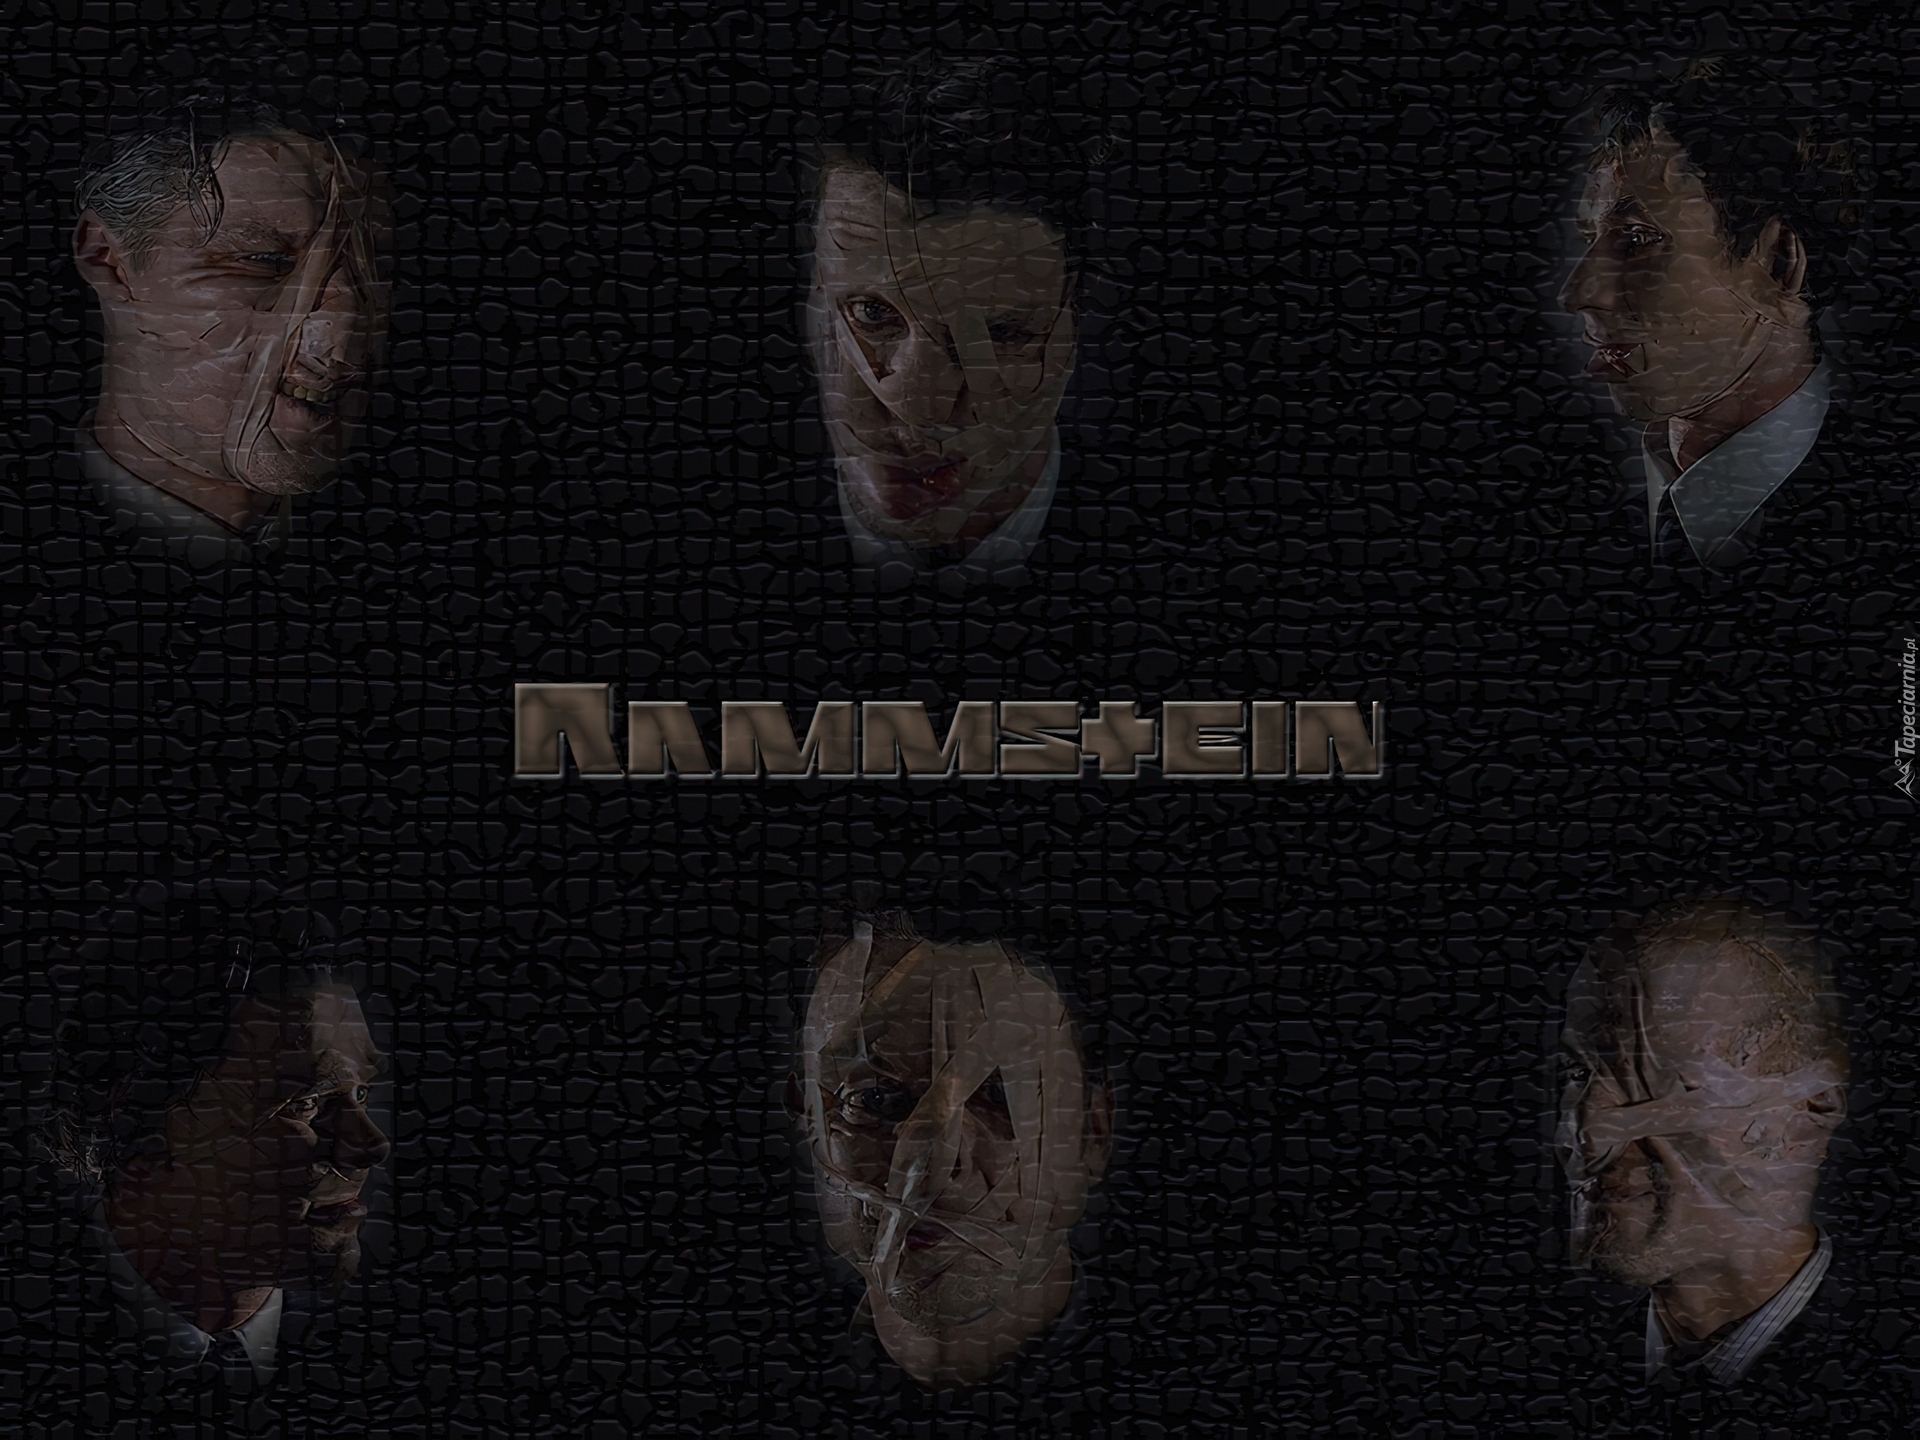 Rammstein,twarze